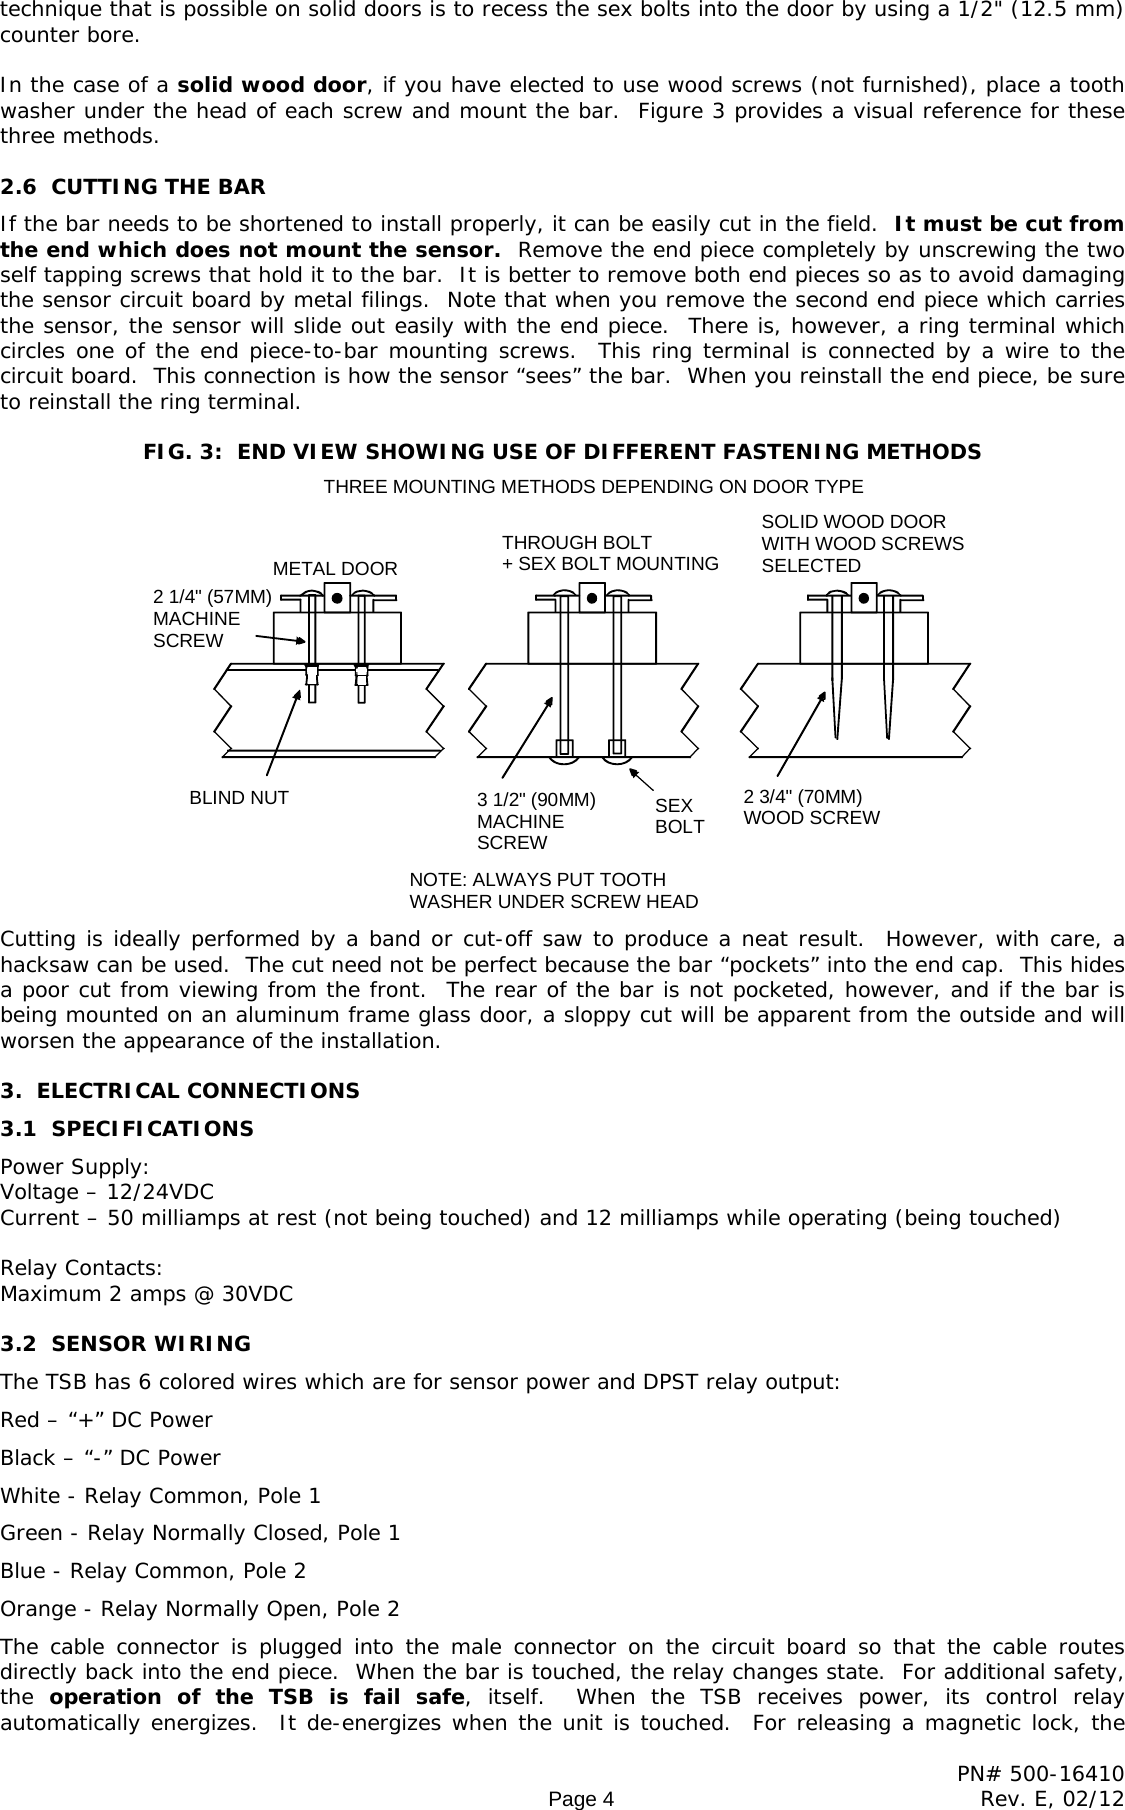 Page 4 of 10 - Securitron - TSB SERIES TS5 Pcb 500-16410_E Installation And Operation Instructions 20SERIES 20 20TS5 20pcb 20500-16410 E